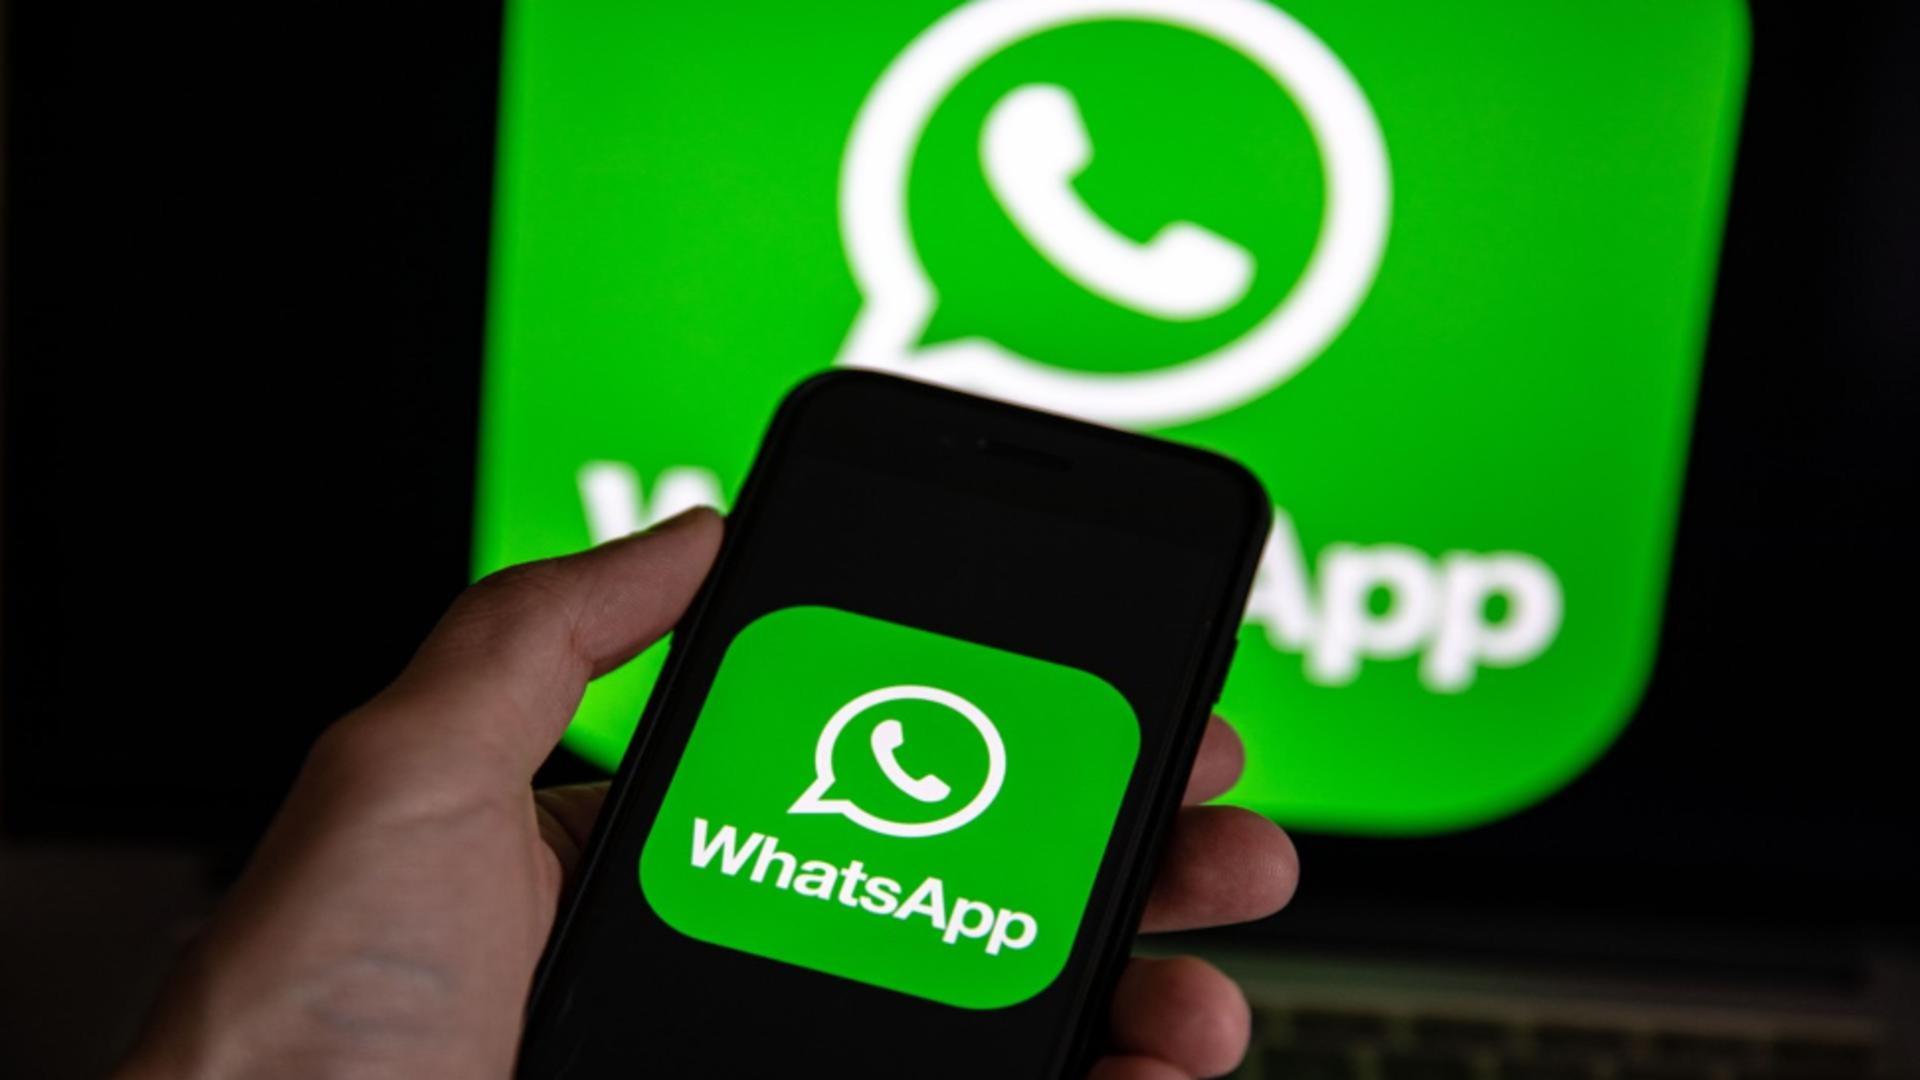 Schimbari majore la WhatsApp – Utilizatorii așteptau de foarte mult timp această funcție